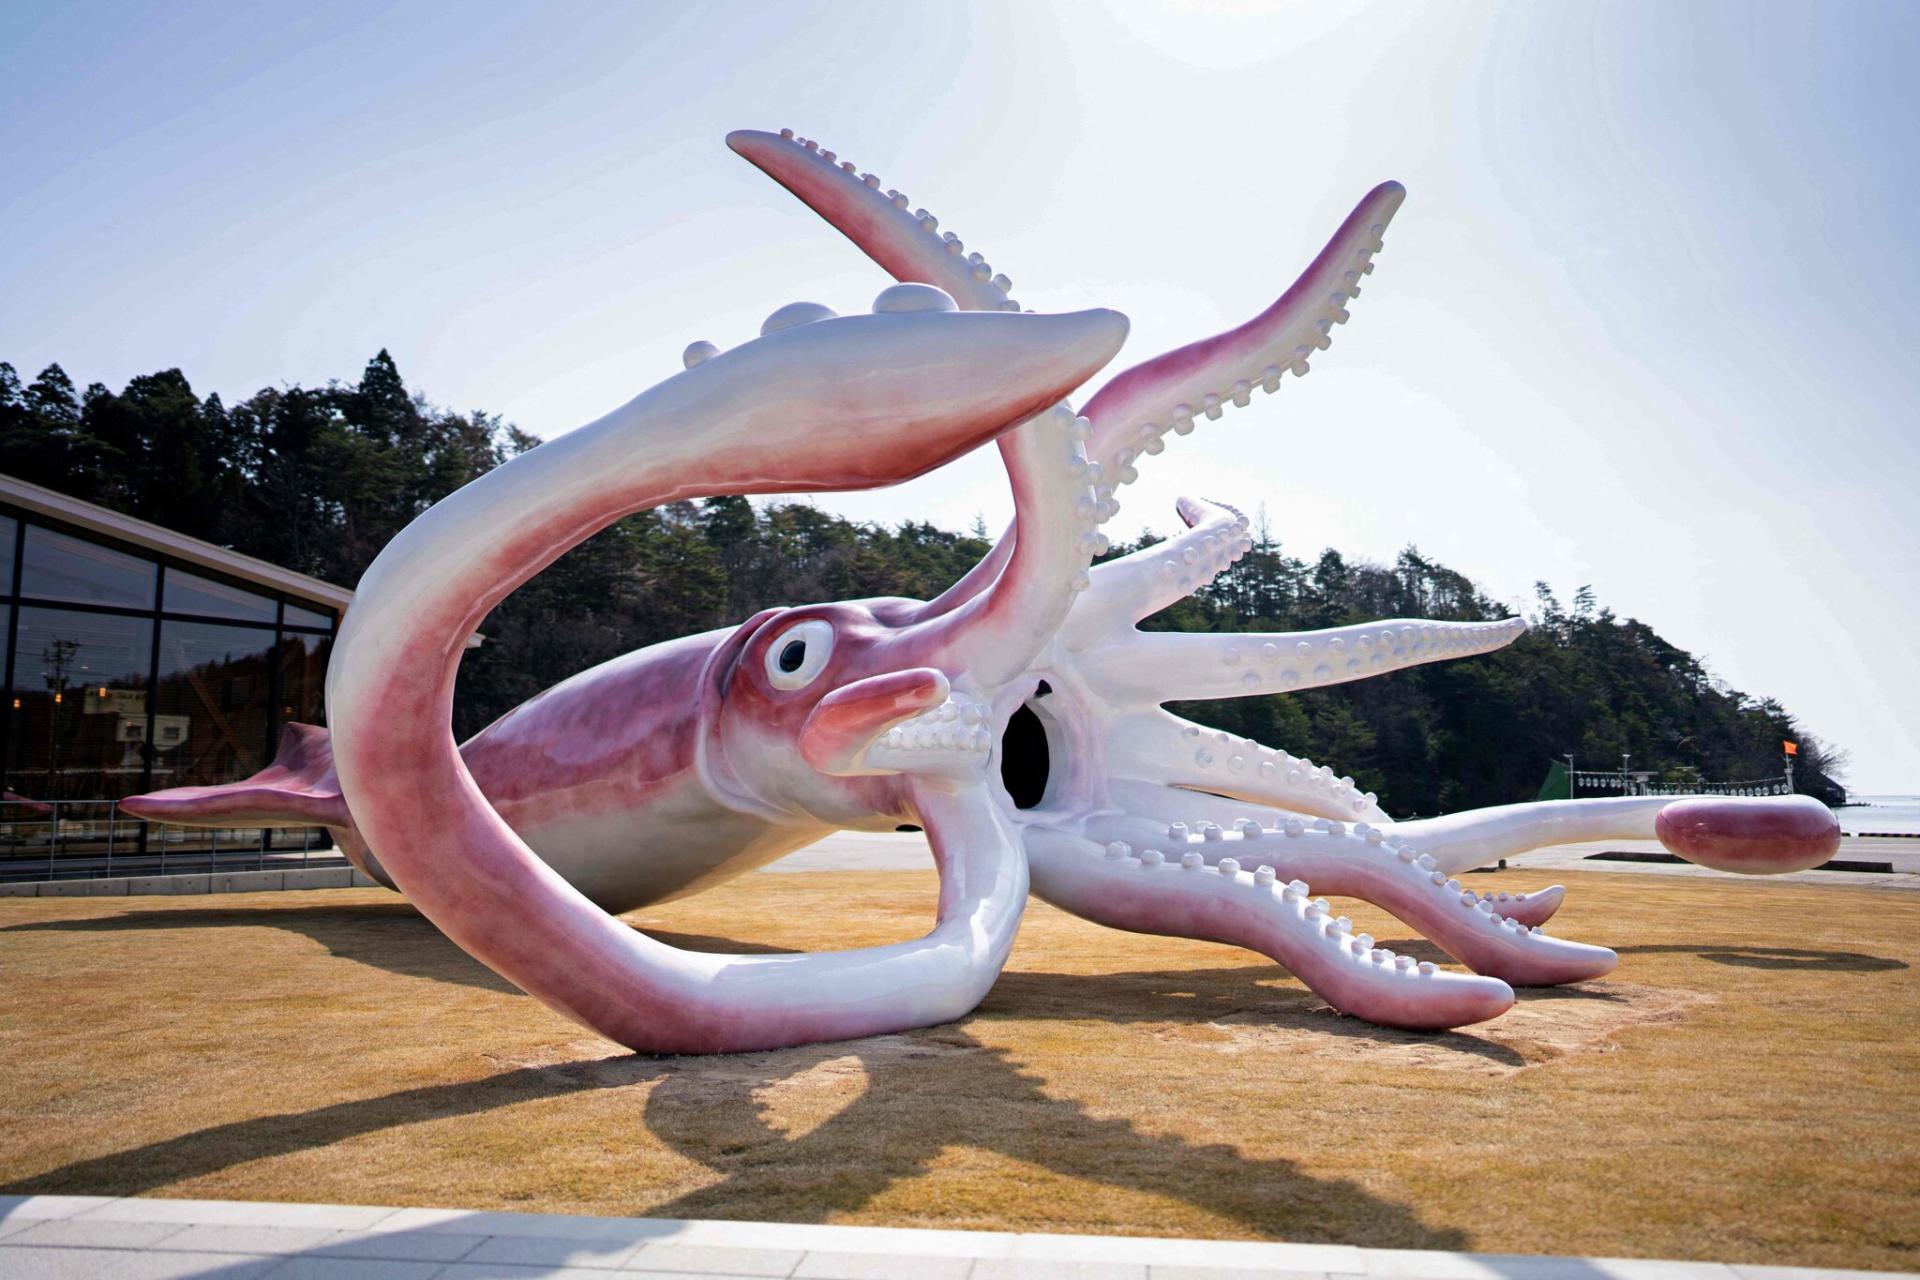 Как мэр японского городка решил поднять престиж местности статуей гигантского кальмара и прославил город на весь мир